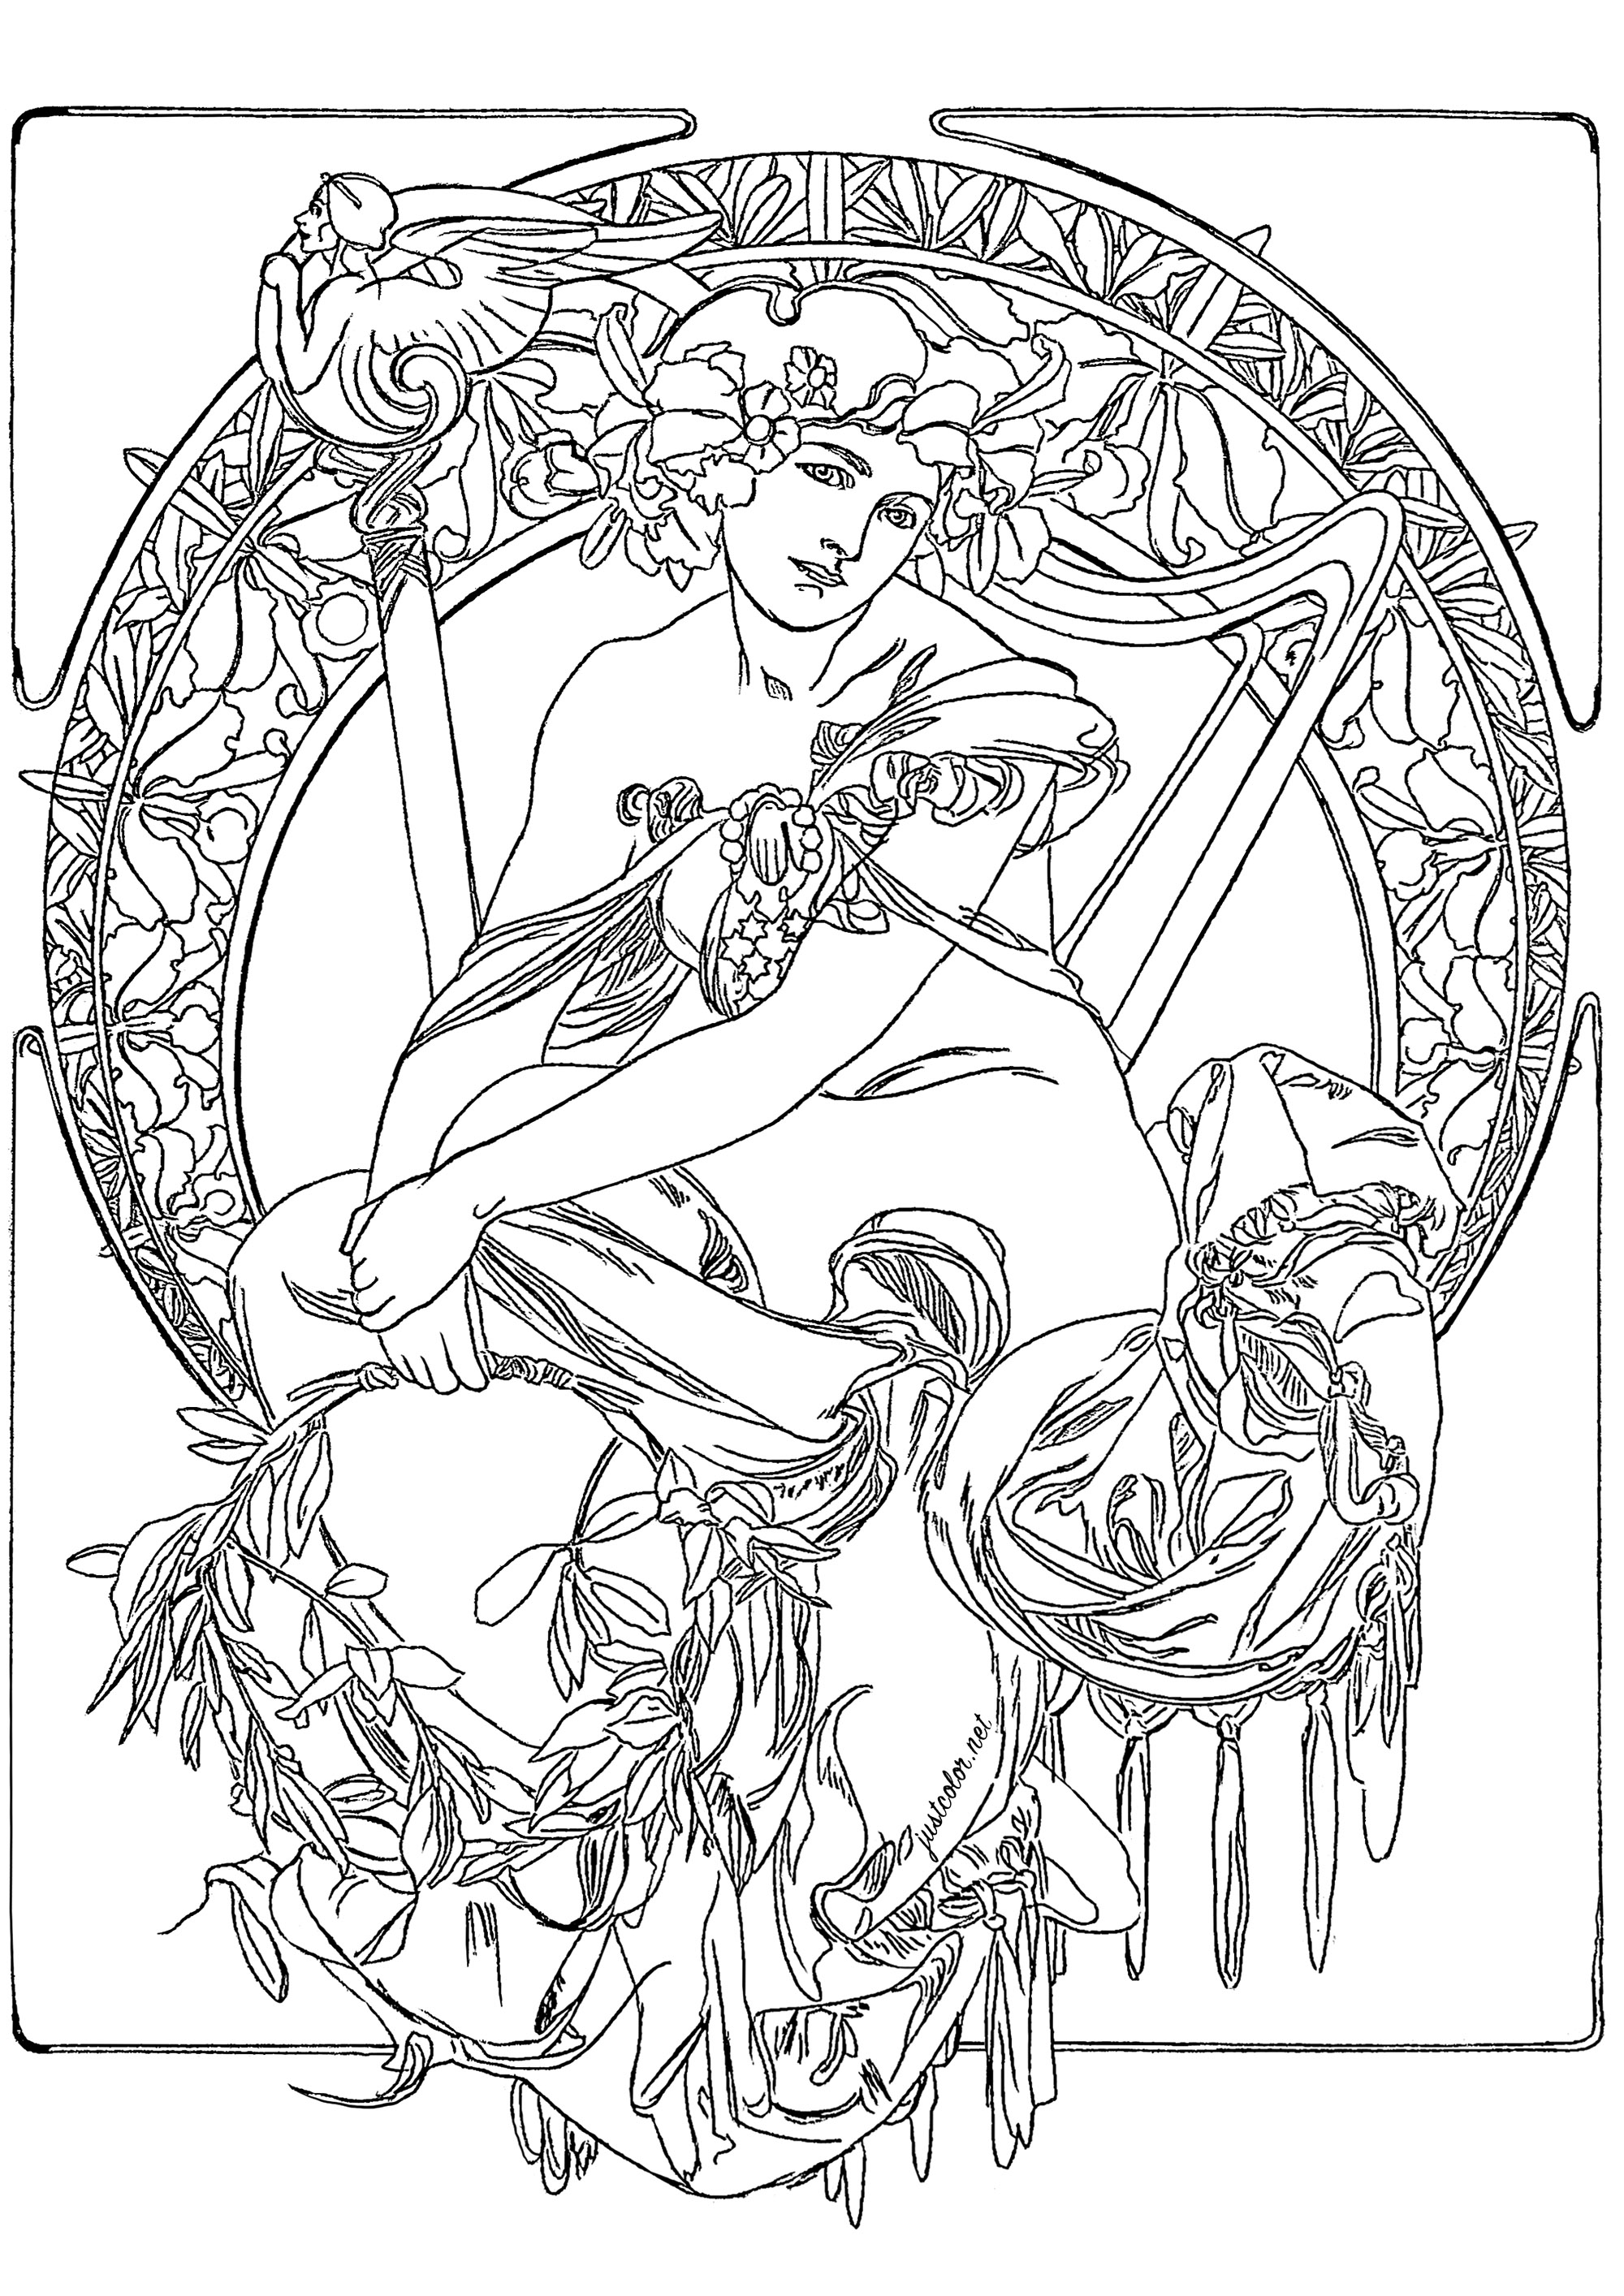 Alfons Mucha - Studie für ein Werbeplakat (1900). Die Komposition basiert auf einem zentralen Kreis, der von einer Reihe von floralen und geometrischen Motiven umgeben ist. Der zentrale Kreis zeigt eine weibliche Figur, deren Kleidung mit floralen Motiven und einem Kranz aus Blättern und Blumen geschmückt ist. Obwohl es sich um eine Skizze handelt, sind die Details sehr präzise und spiegeln Muchas Finesse und Liebe zum Detail wider (die Originalzeichnung wurde leicht überarbeitet, um eine Kolorierung zu ermöglichen), Künstler : Olivier